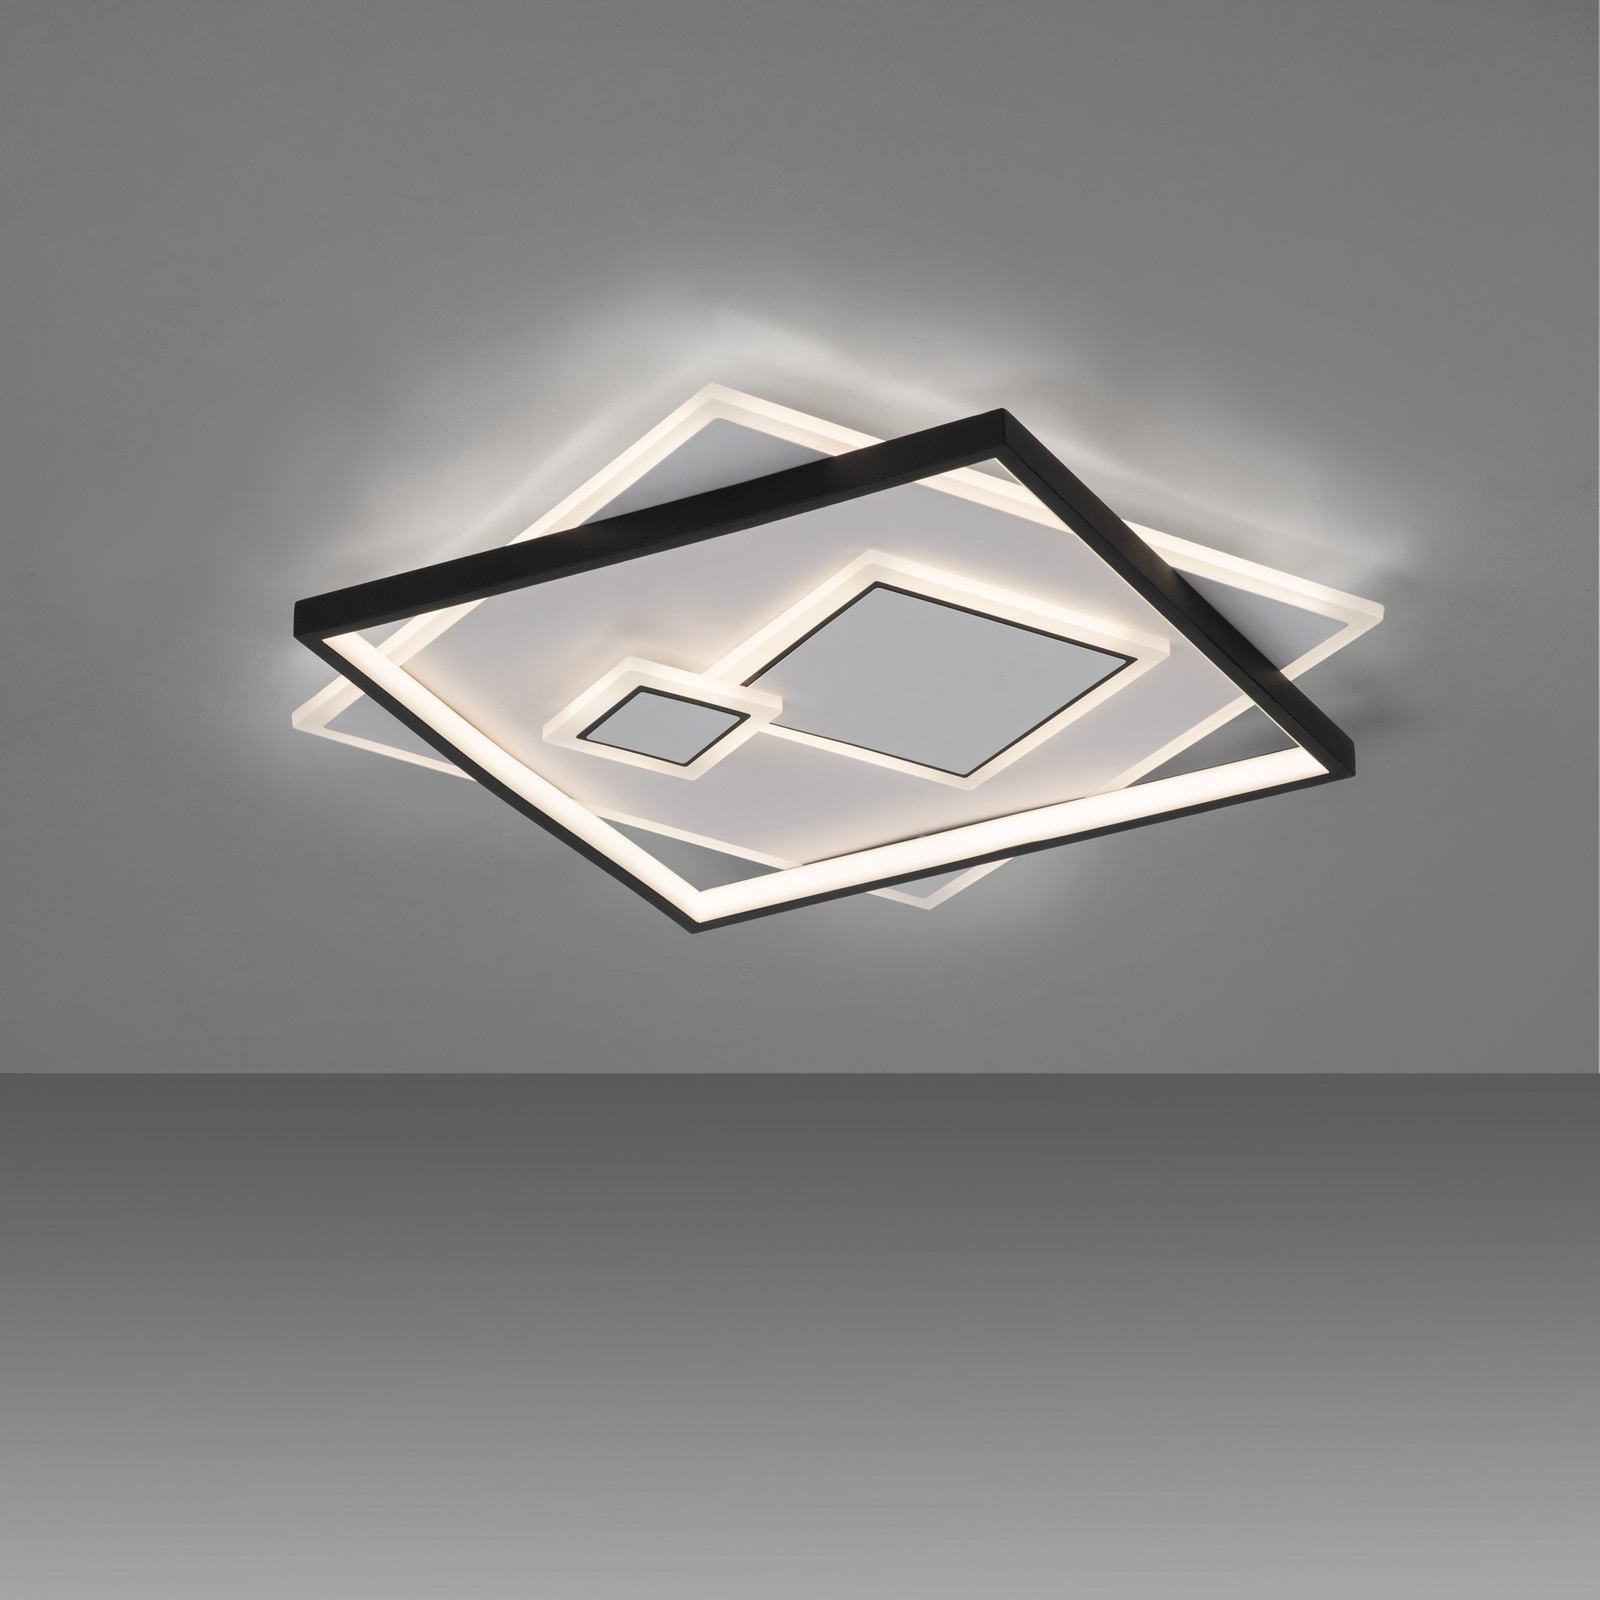 Mailak LED ceiling light 57 x 57 cm